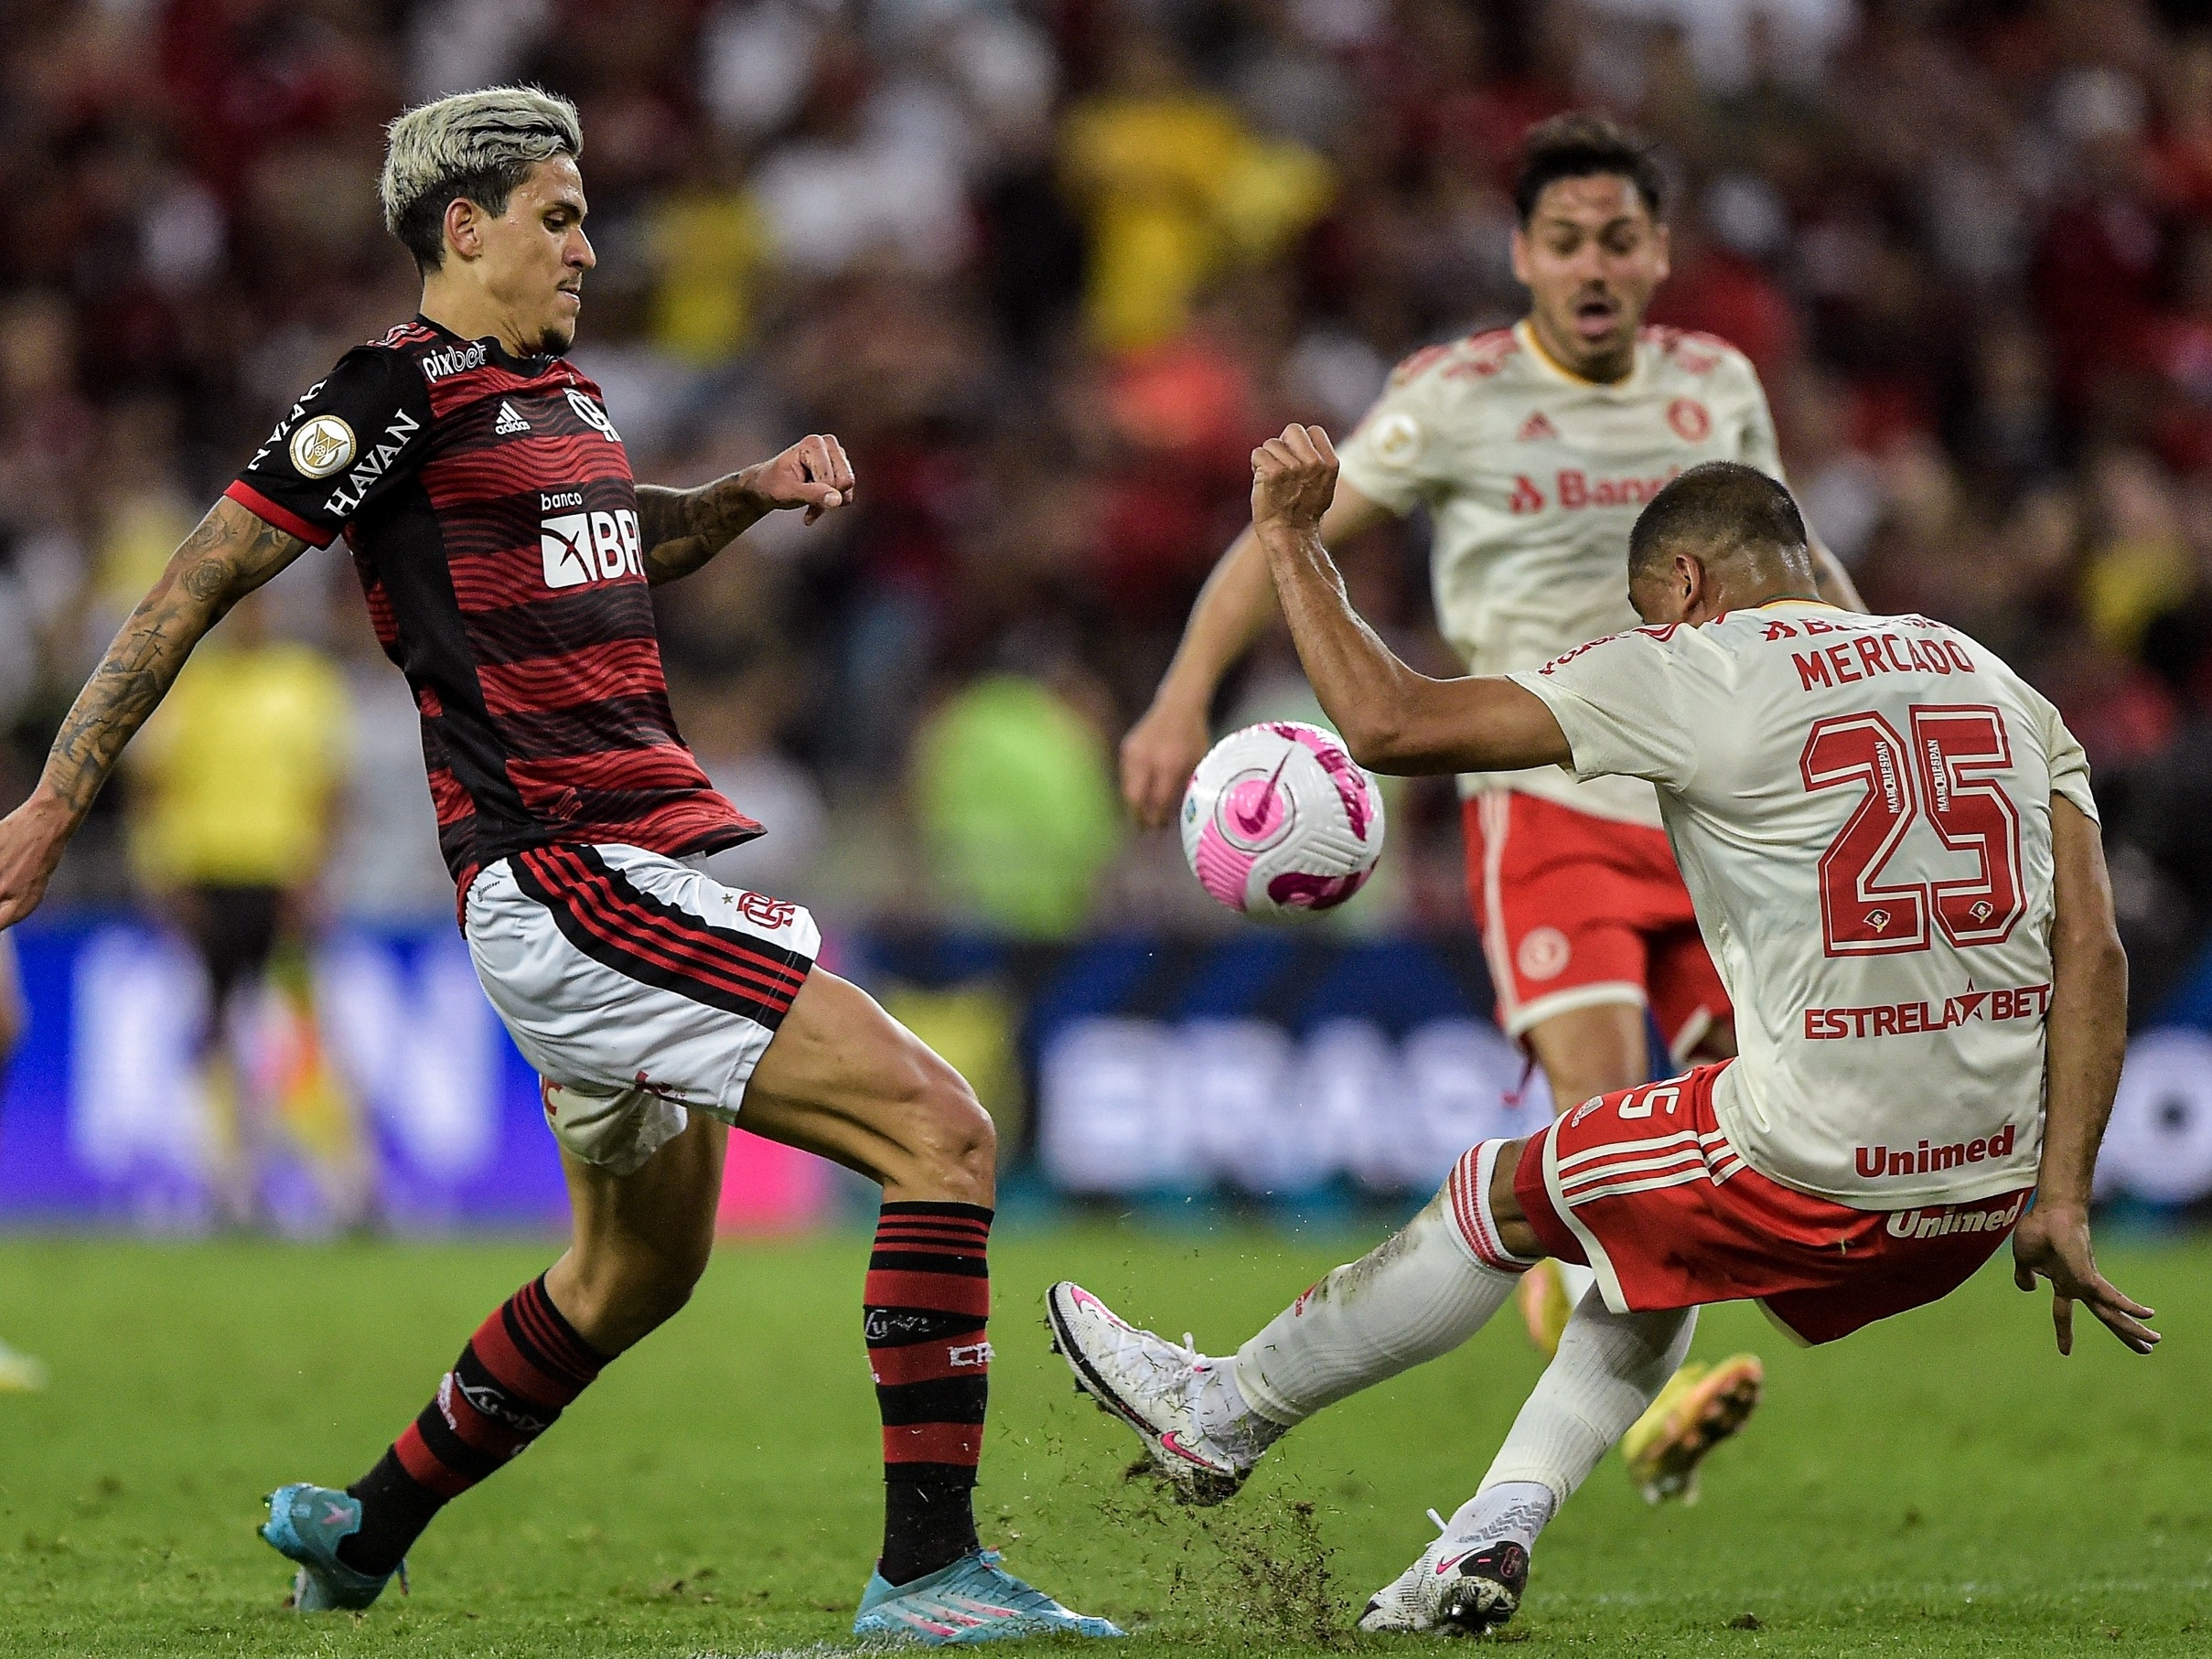 Campeonato Brasileiro  Flamengo x Internacional - AO VIVO 